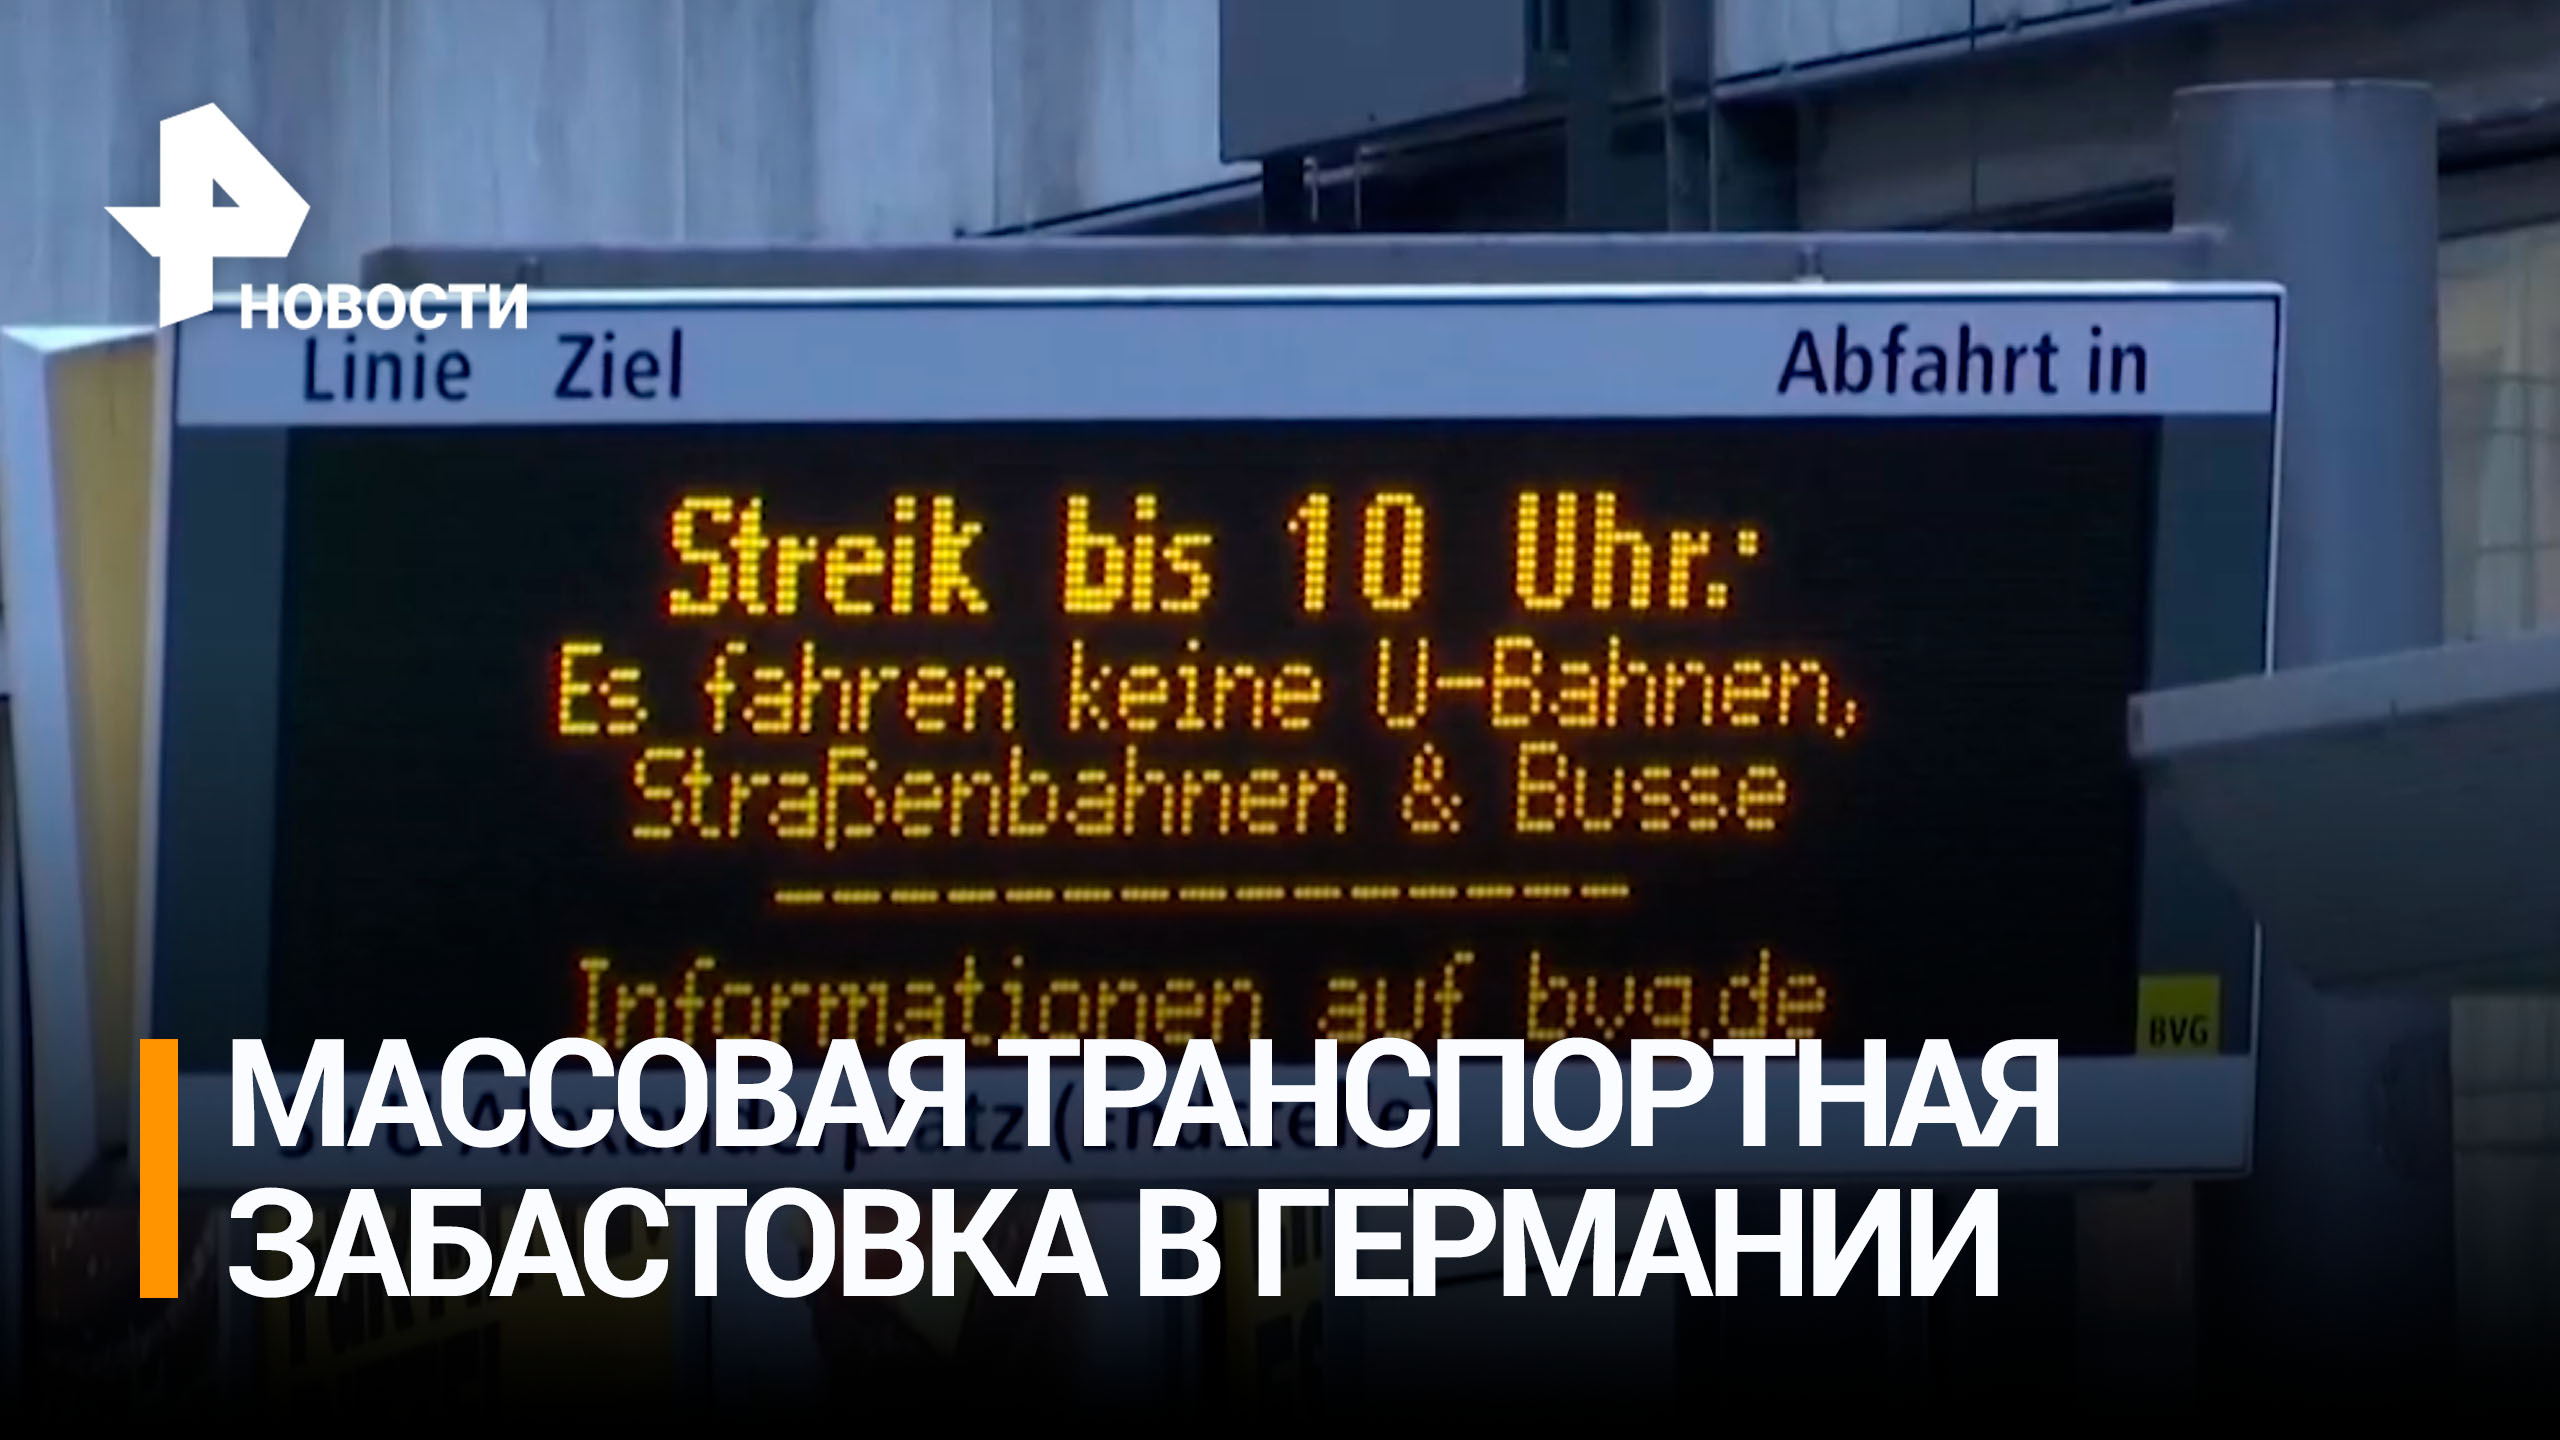 Работники общественного транспорта устроили забастовку в Германии / РЕН Новости